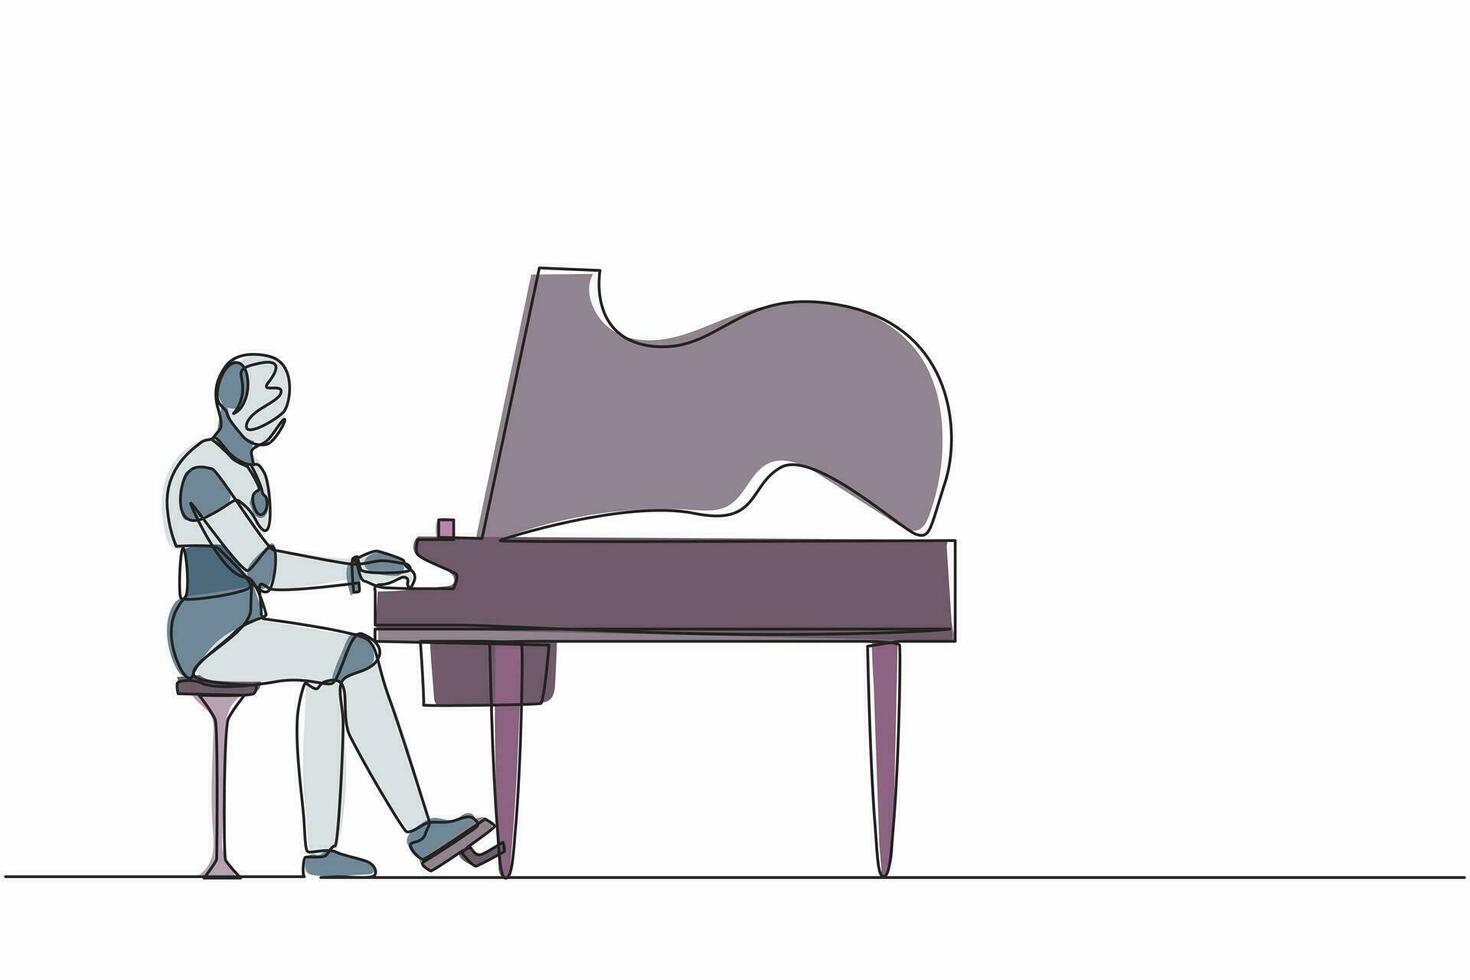 robot de dibujo de una sola línea continua sentado y tocando el piano de cola en el escenario. Inteligencia artificial robótica moderna. industria de la tecnología electrónica. ilustración de vector de diseño gráfico de dibujo de una línea